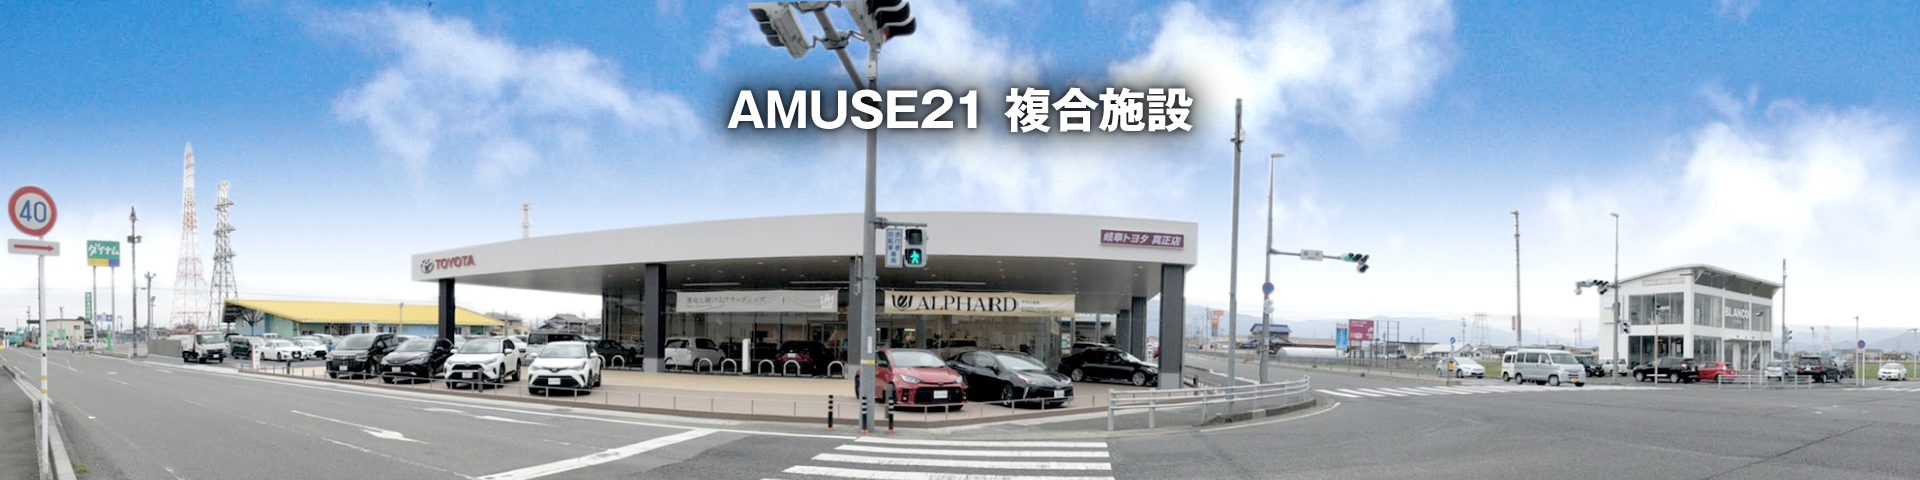 AMUSE21 複合施設